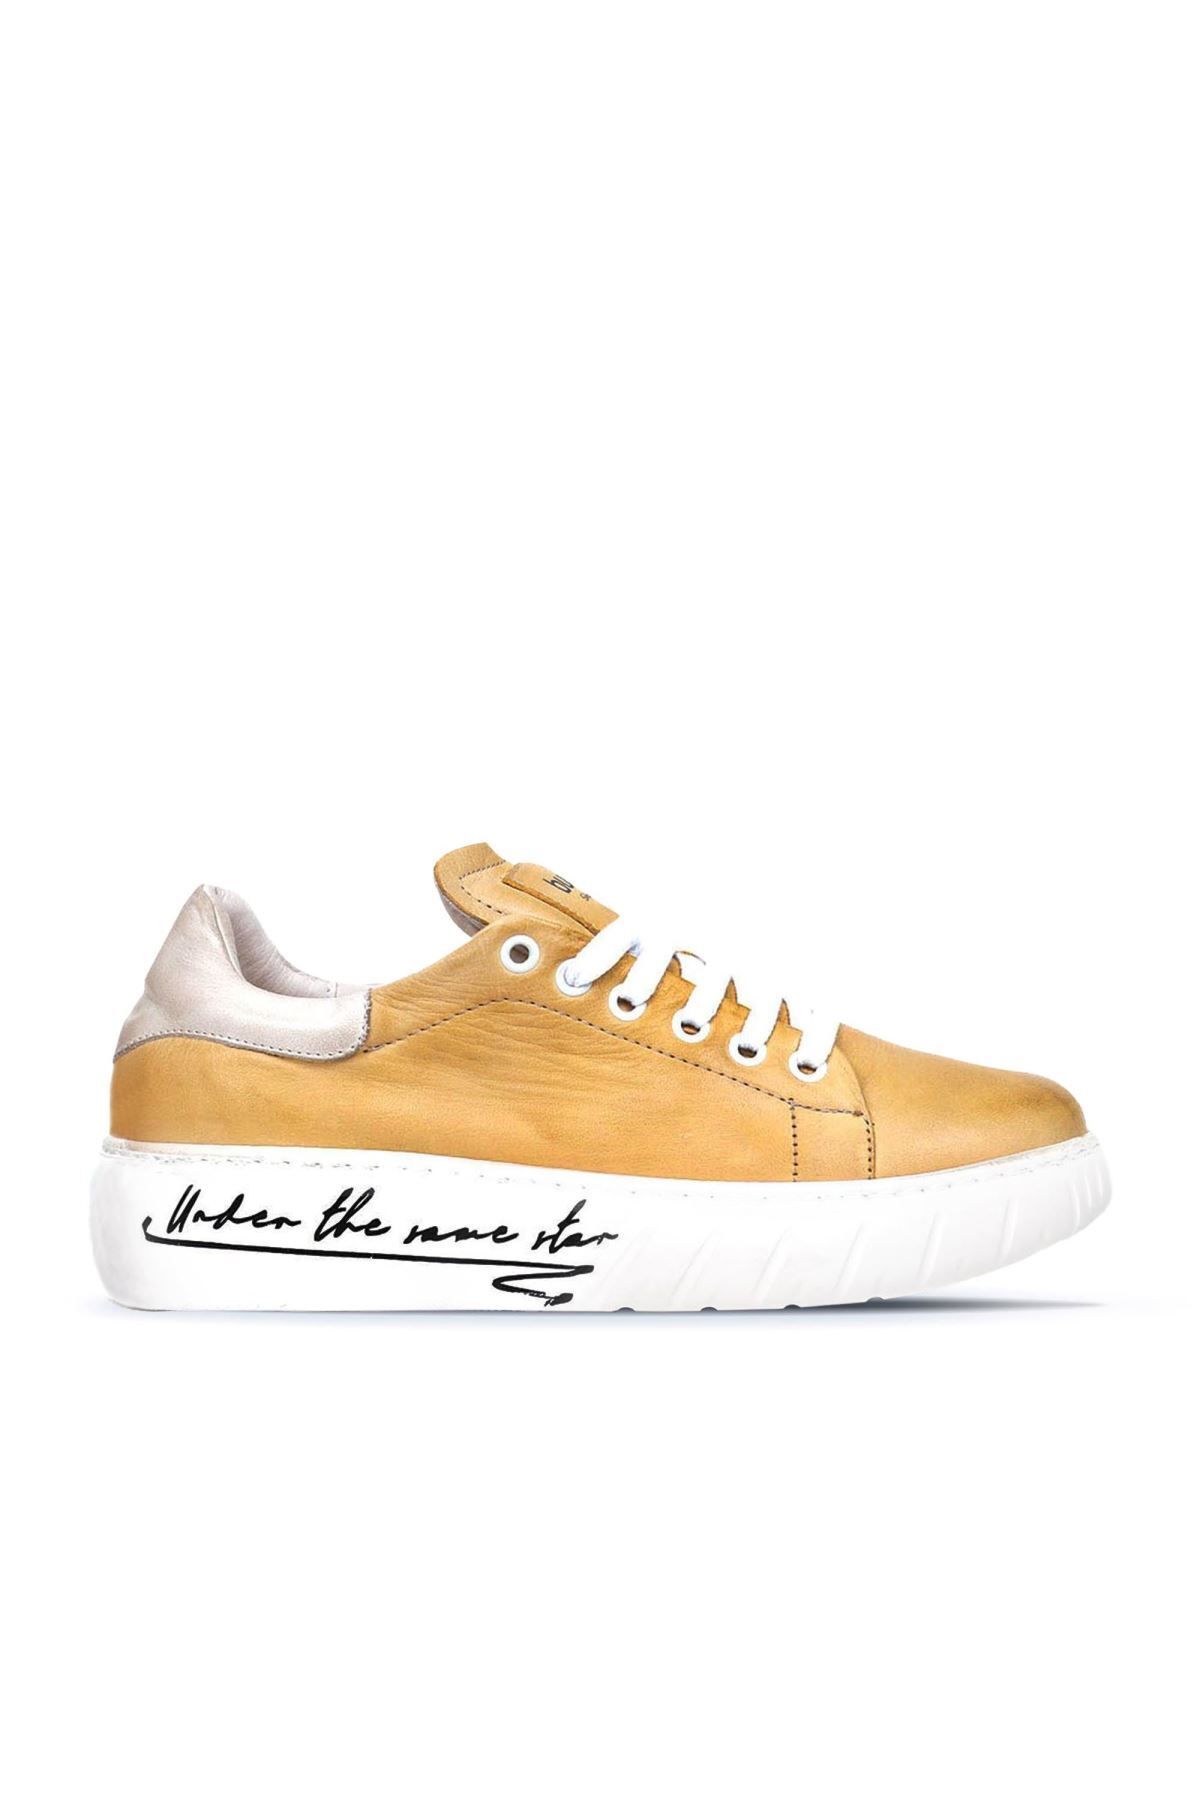 BUENO Shoes Sarı B75c02 Kadın Spor Ayakkabı